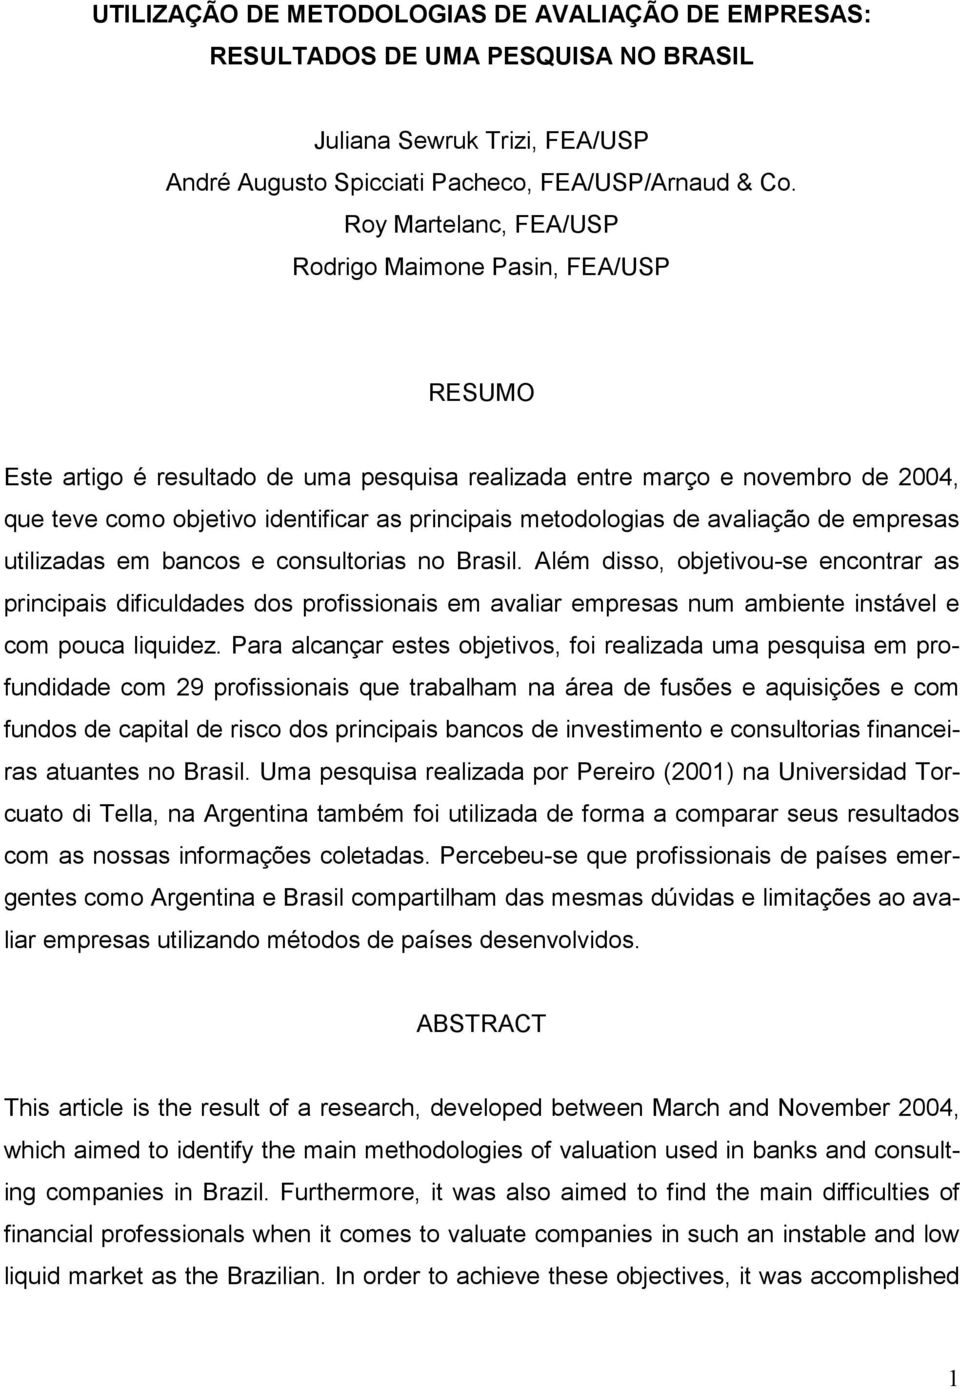 metodologias de avaliação de empresas utilizadas em bancos e consultorias no Brasil.